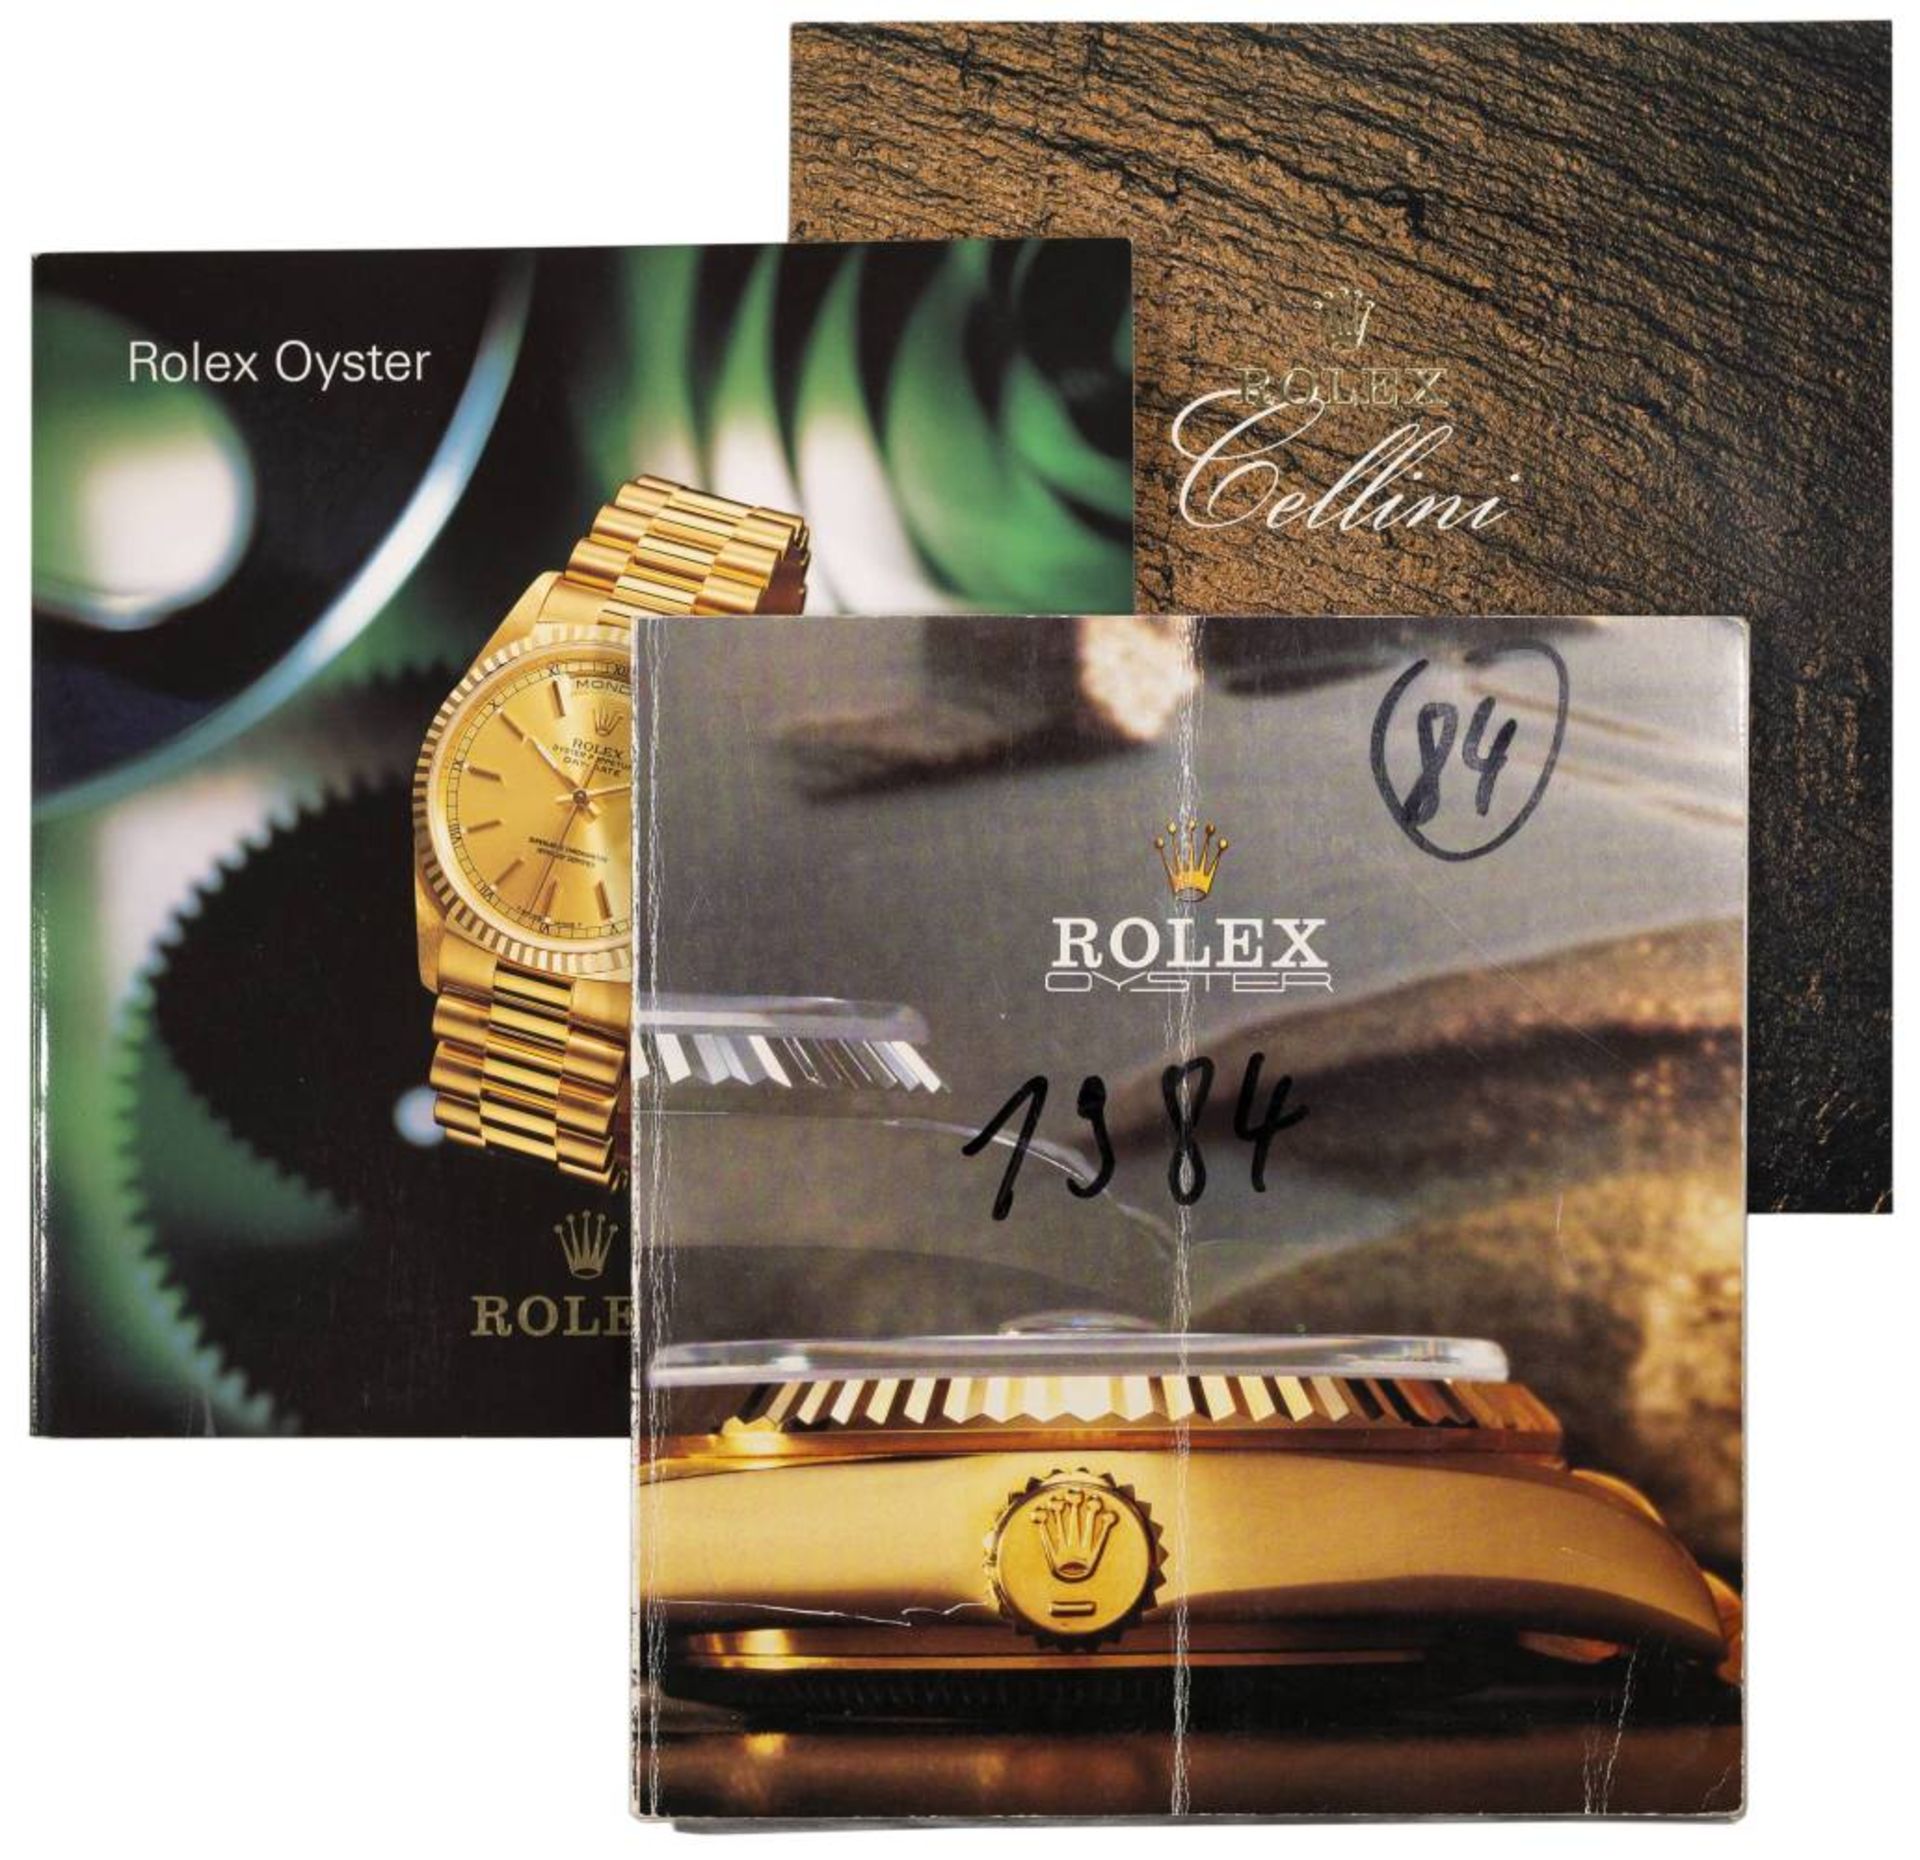 ROLEX - Prospekte und weitere, dabei Rolex-Oyster 1984,1998 und Rolex-Cellini 1998, je inkl. - Bild 2 aus 4